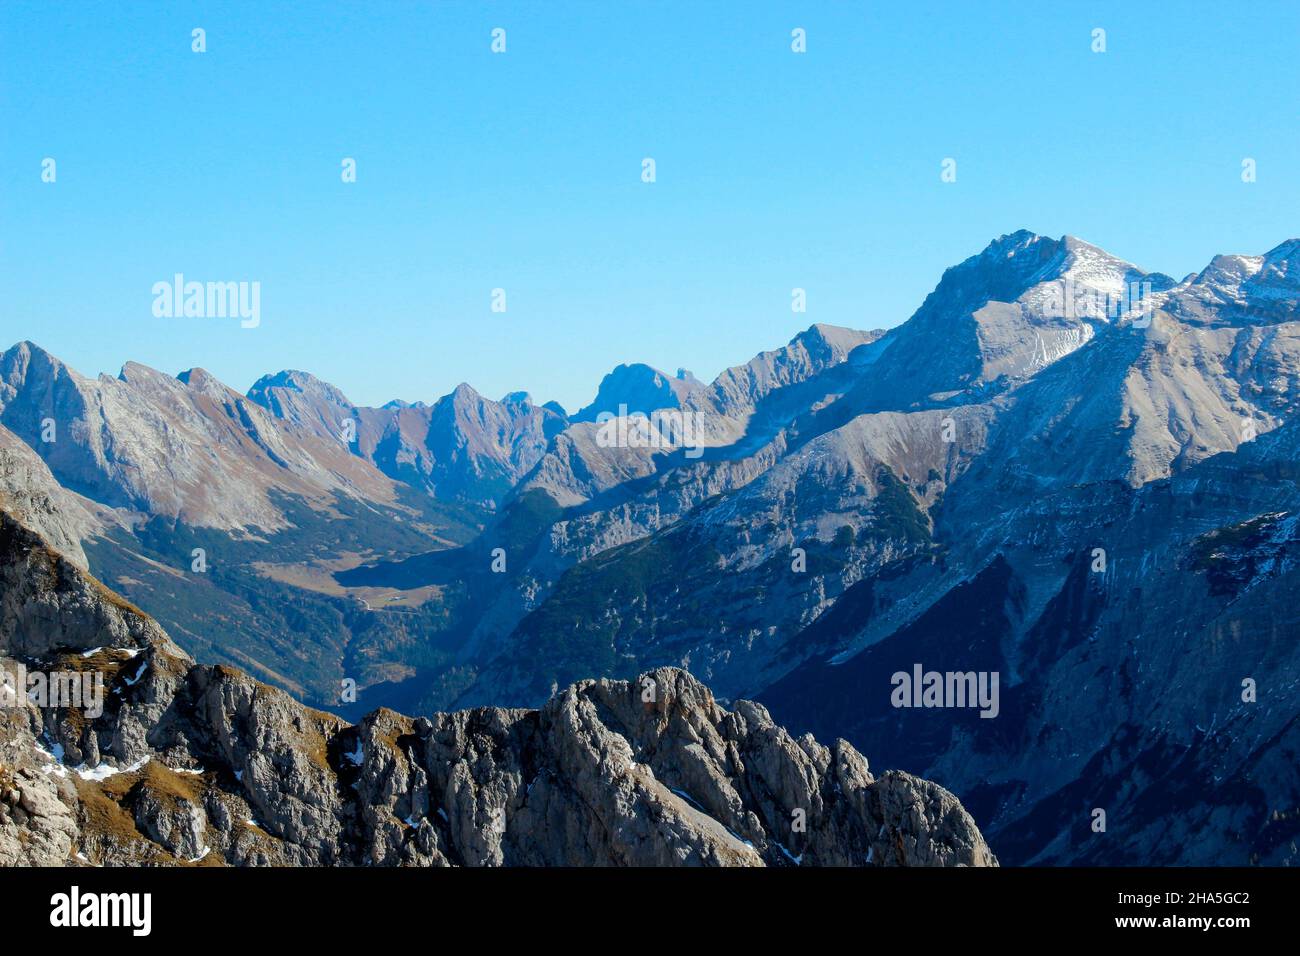 vue de la passamani panoramaweg (allemagne, zone frontalière) dans le karwendeltal autrichien avec les sommets de montagne écrasants, en commençant par le grabenkarspitze jusqu'au marxenkarspitze à l'extrême droite de la photo, à l'ombre du karwendelhaus Banque D'Images